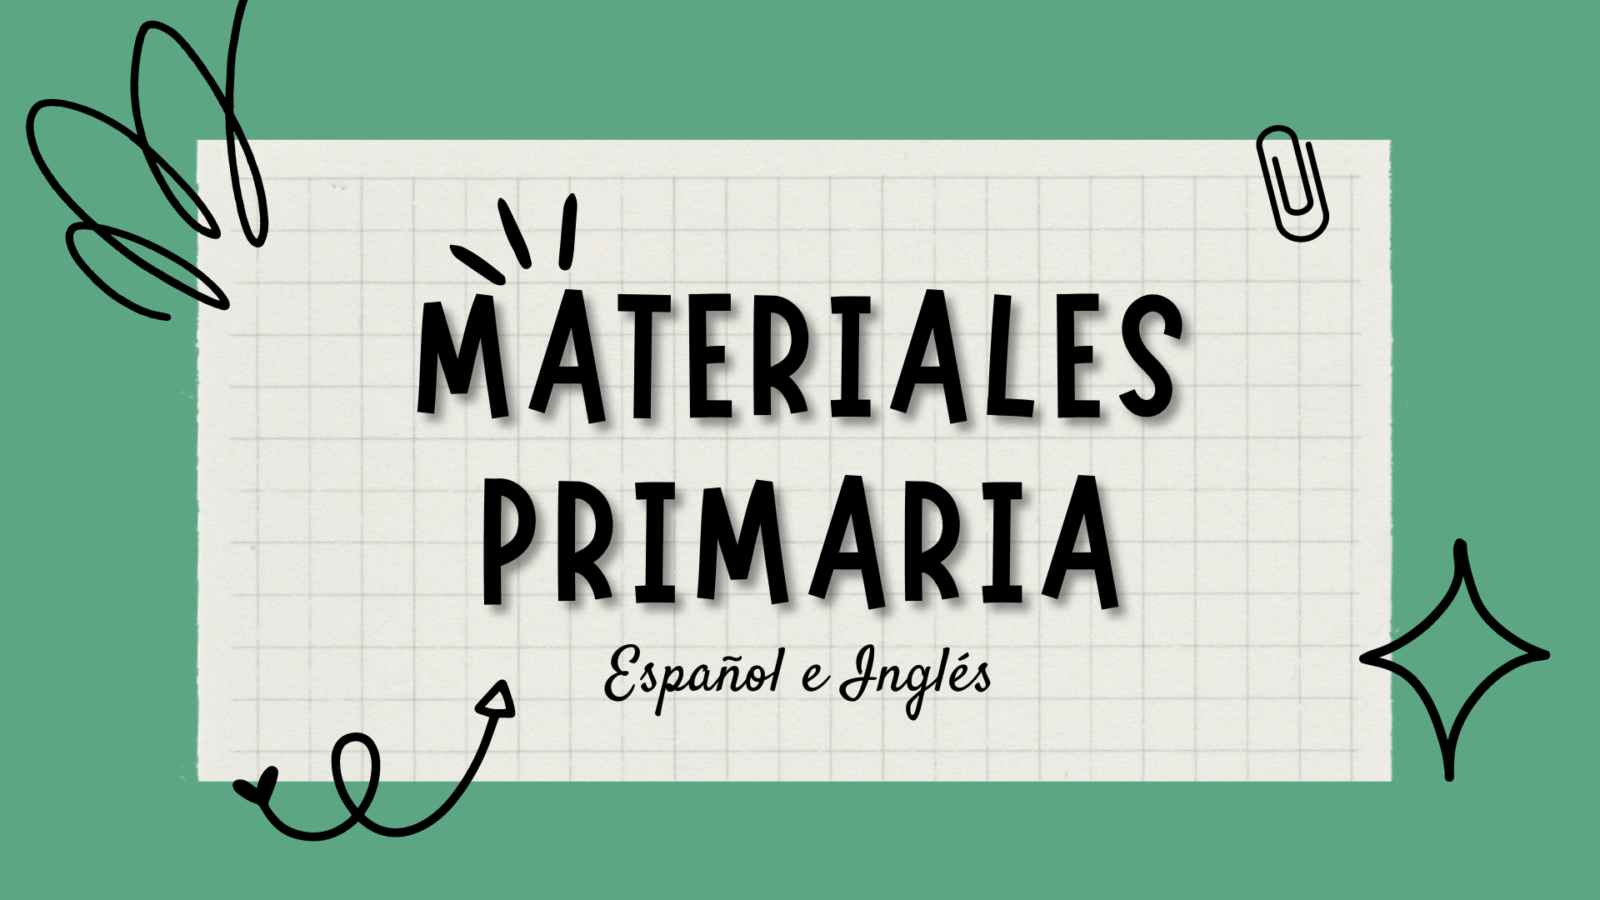 MATERIALES PRIMARIA